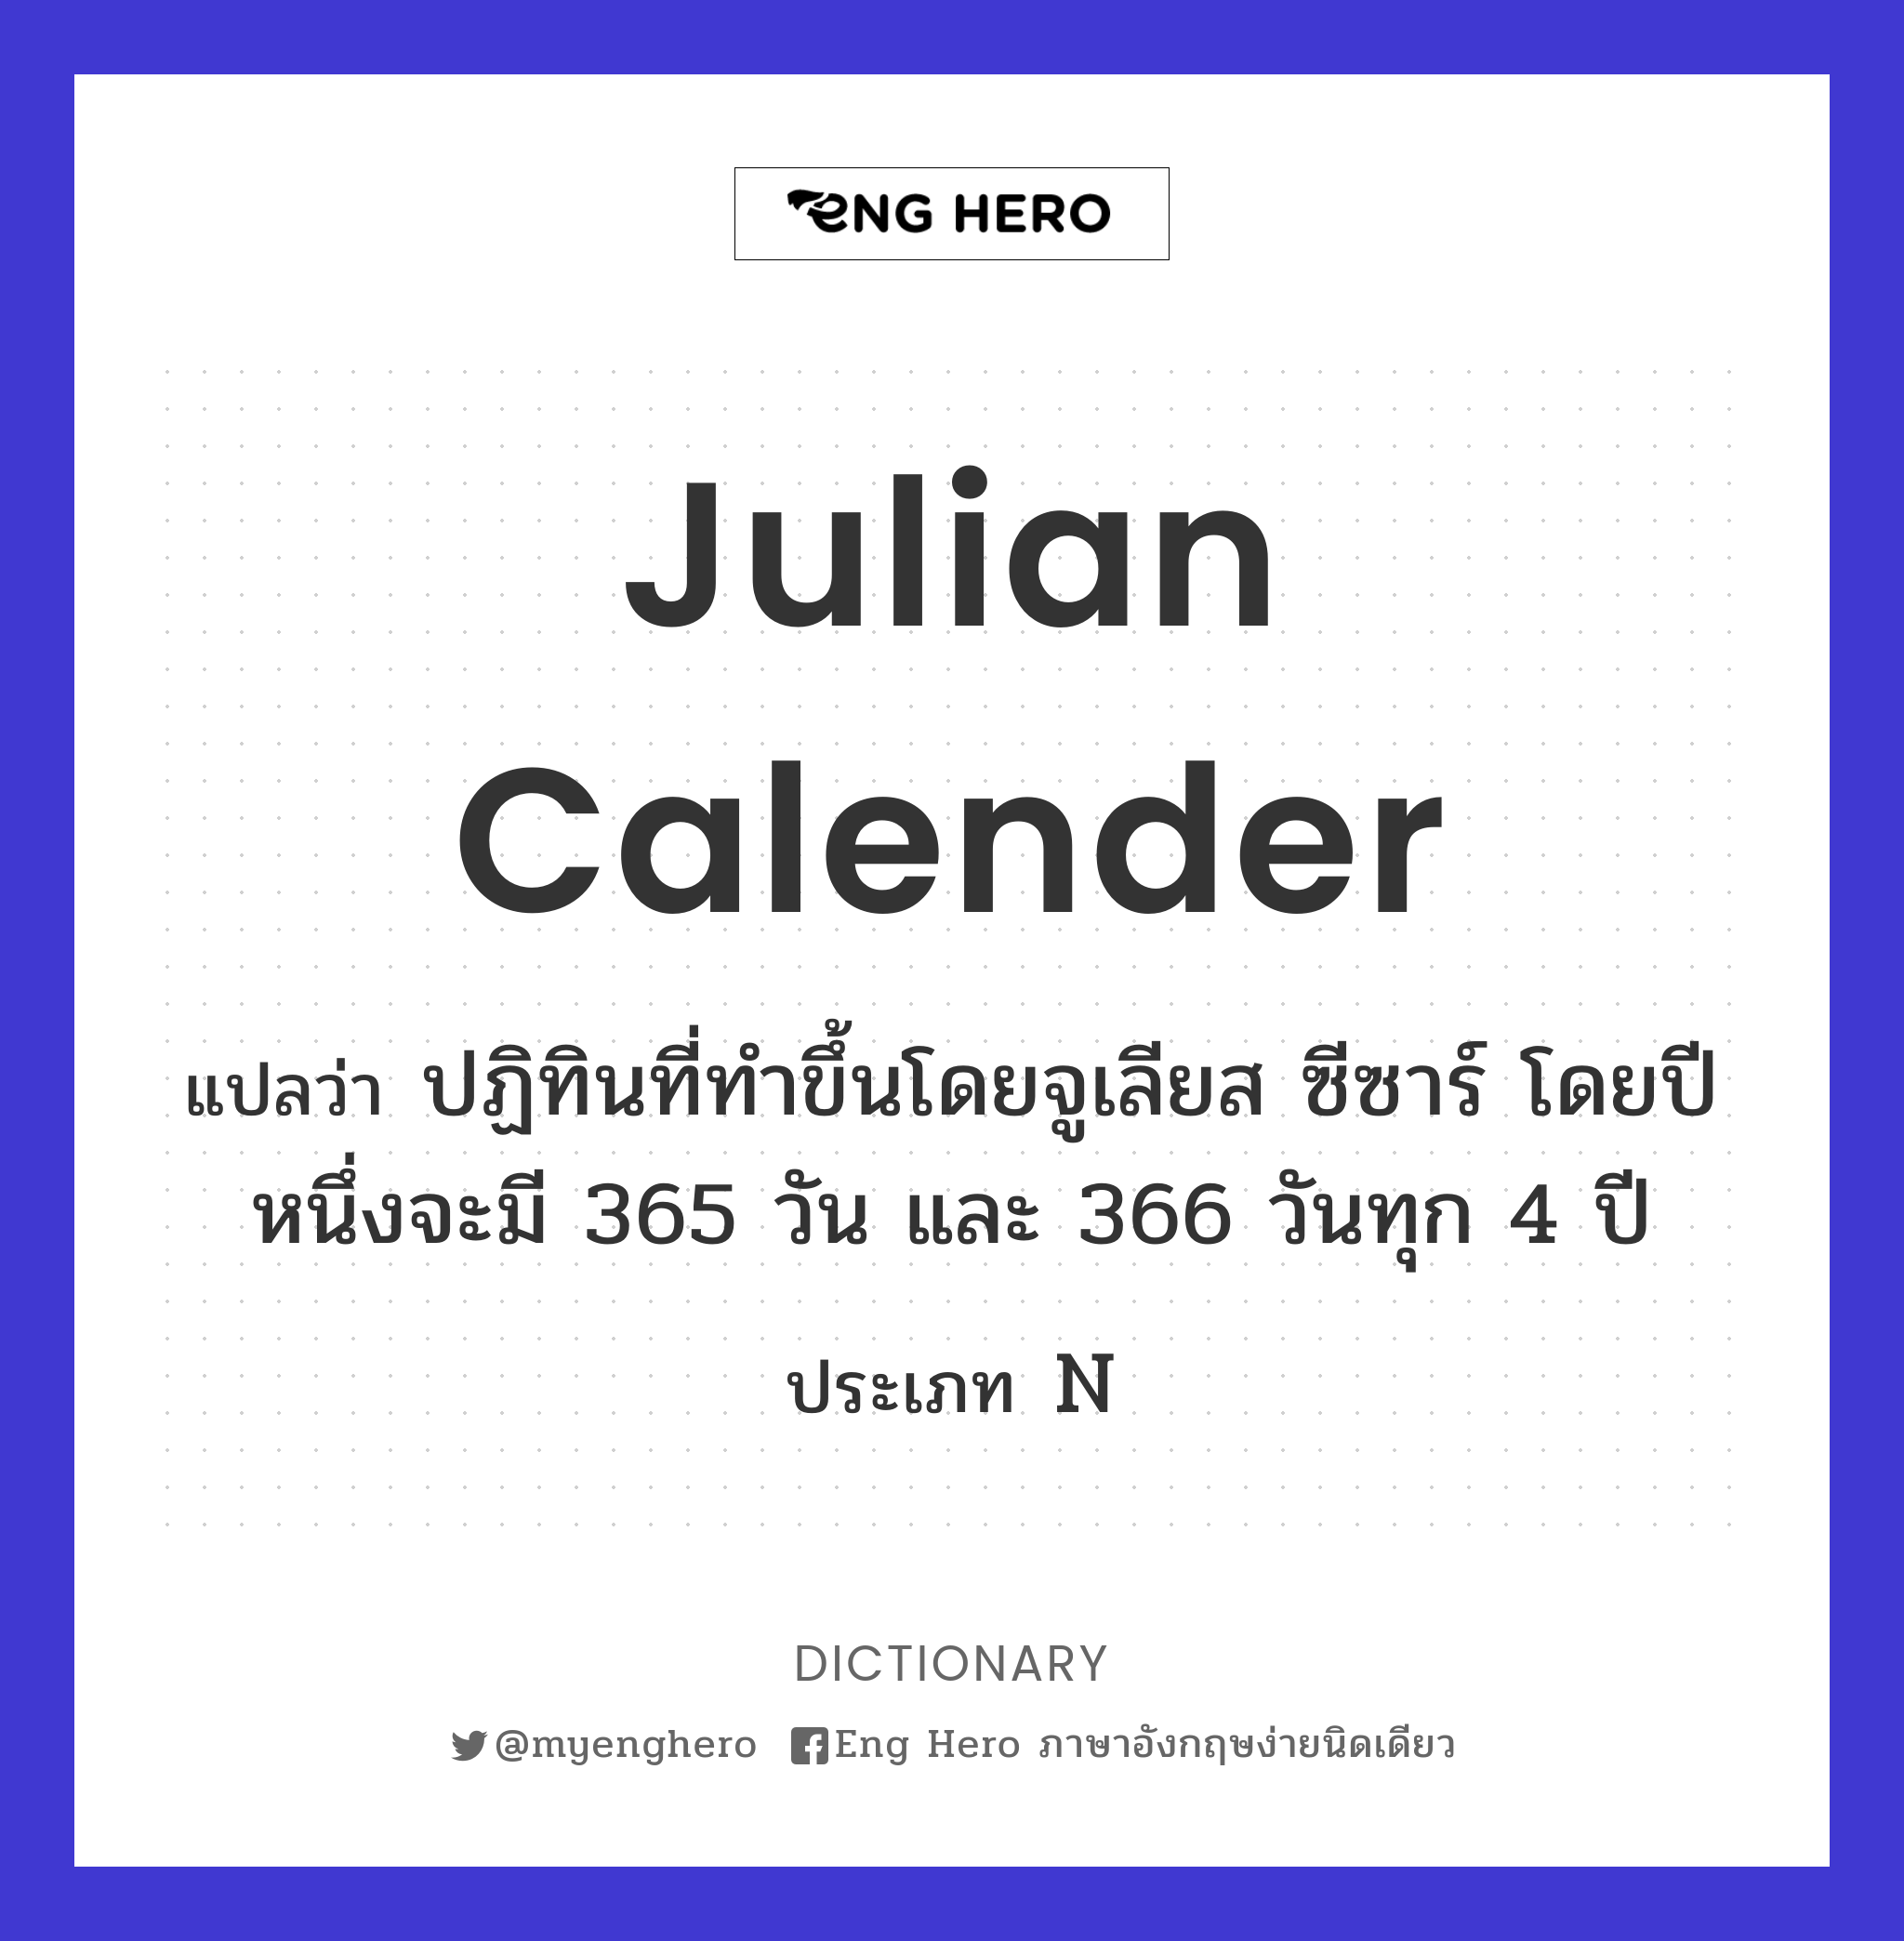 Julian calender